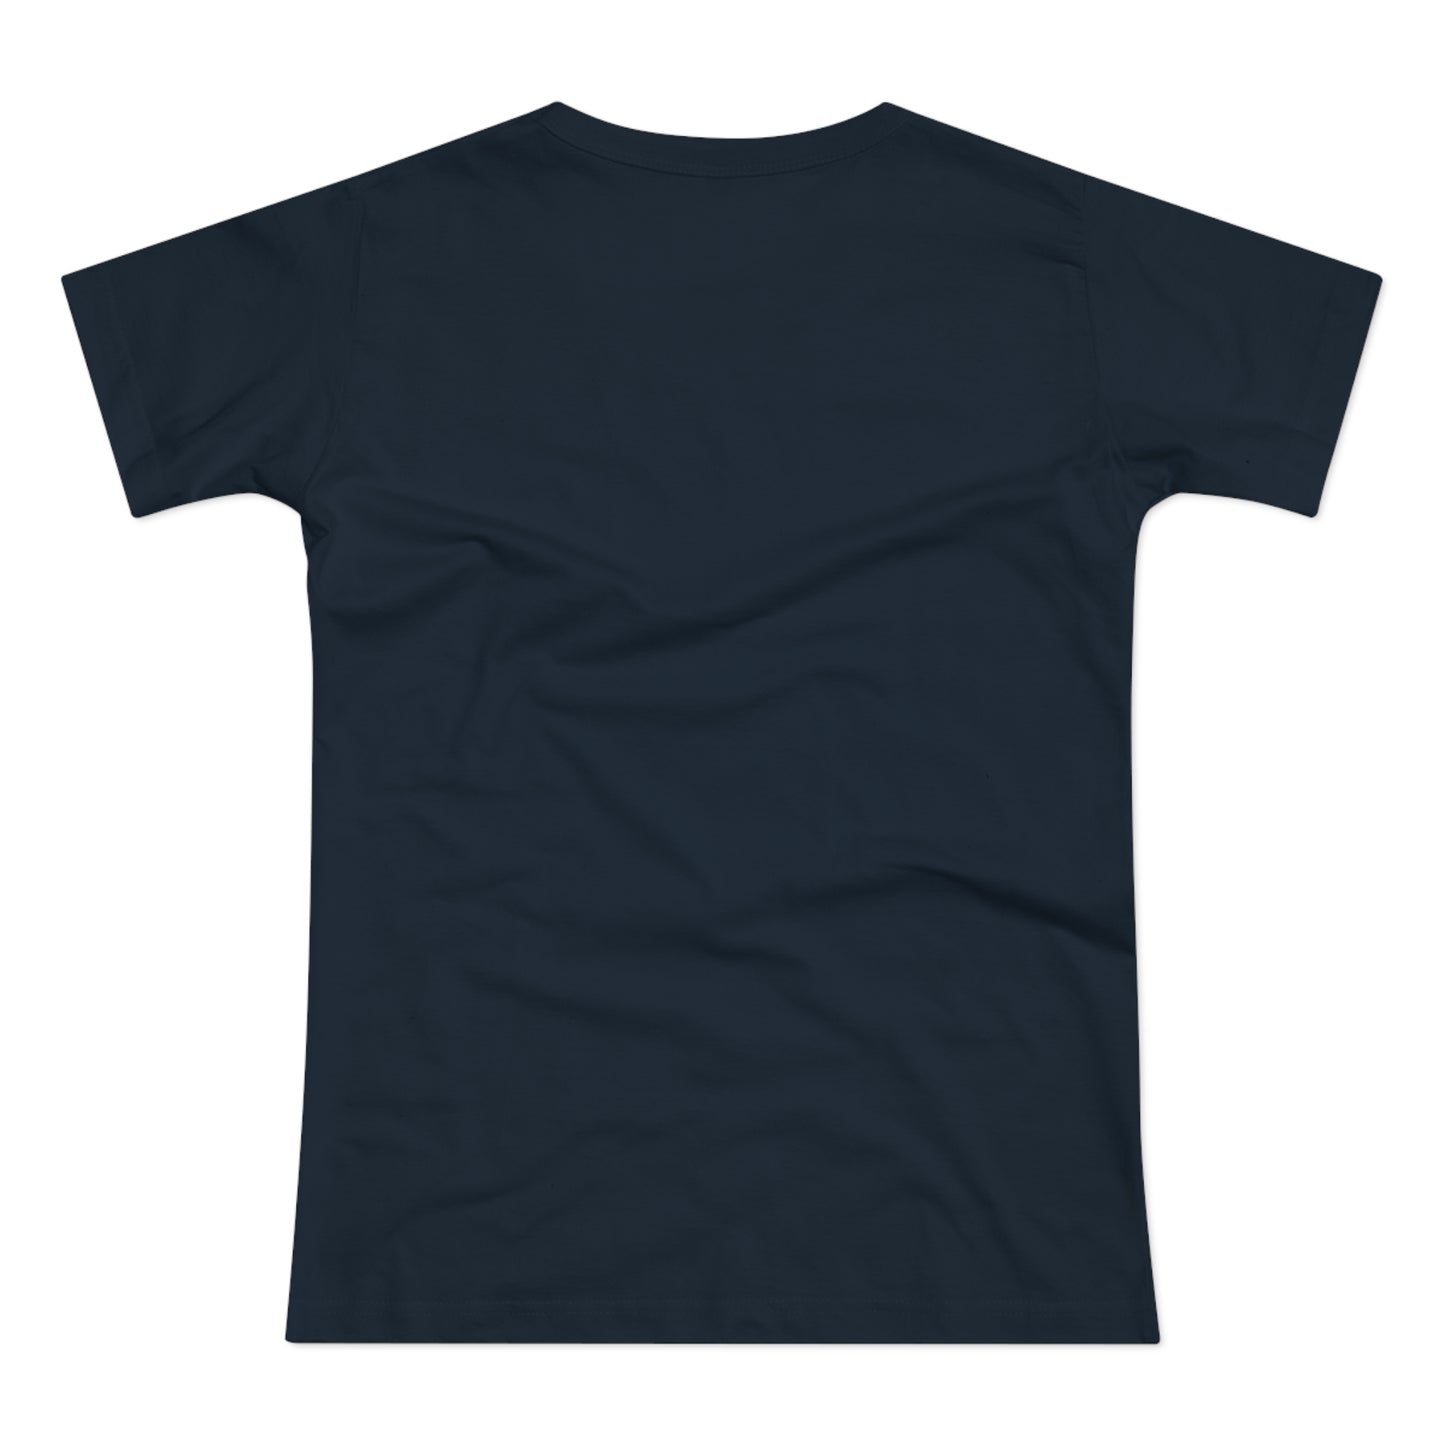 T-skjorte Dame - "Eat, sleep, walk dogs, repeat"